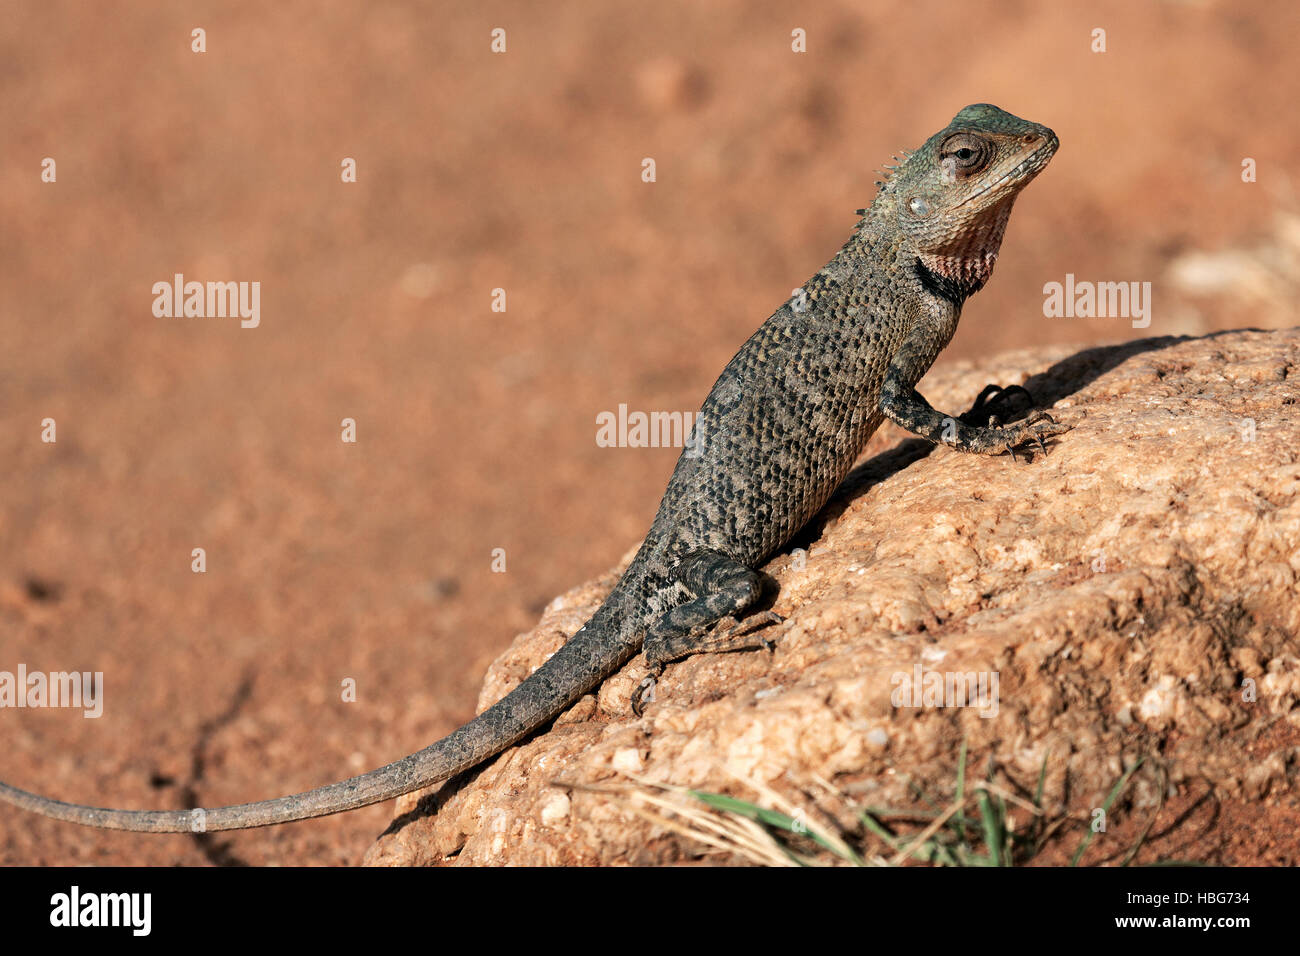 Oriental garden lizard, also eastern garden lizard or changeable lizard (Calotes versicolor), juvenile, Sri Lanka Stock Photo